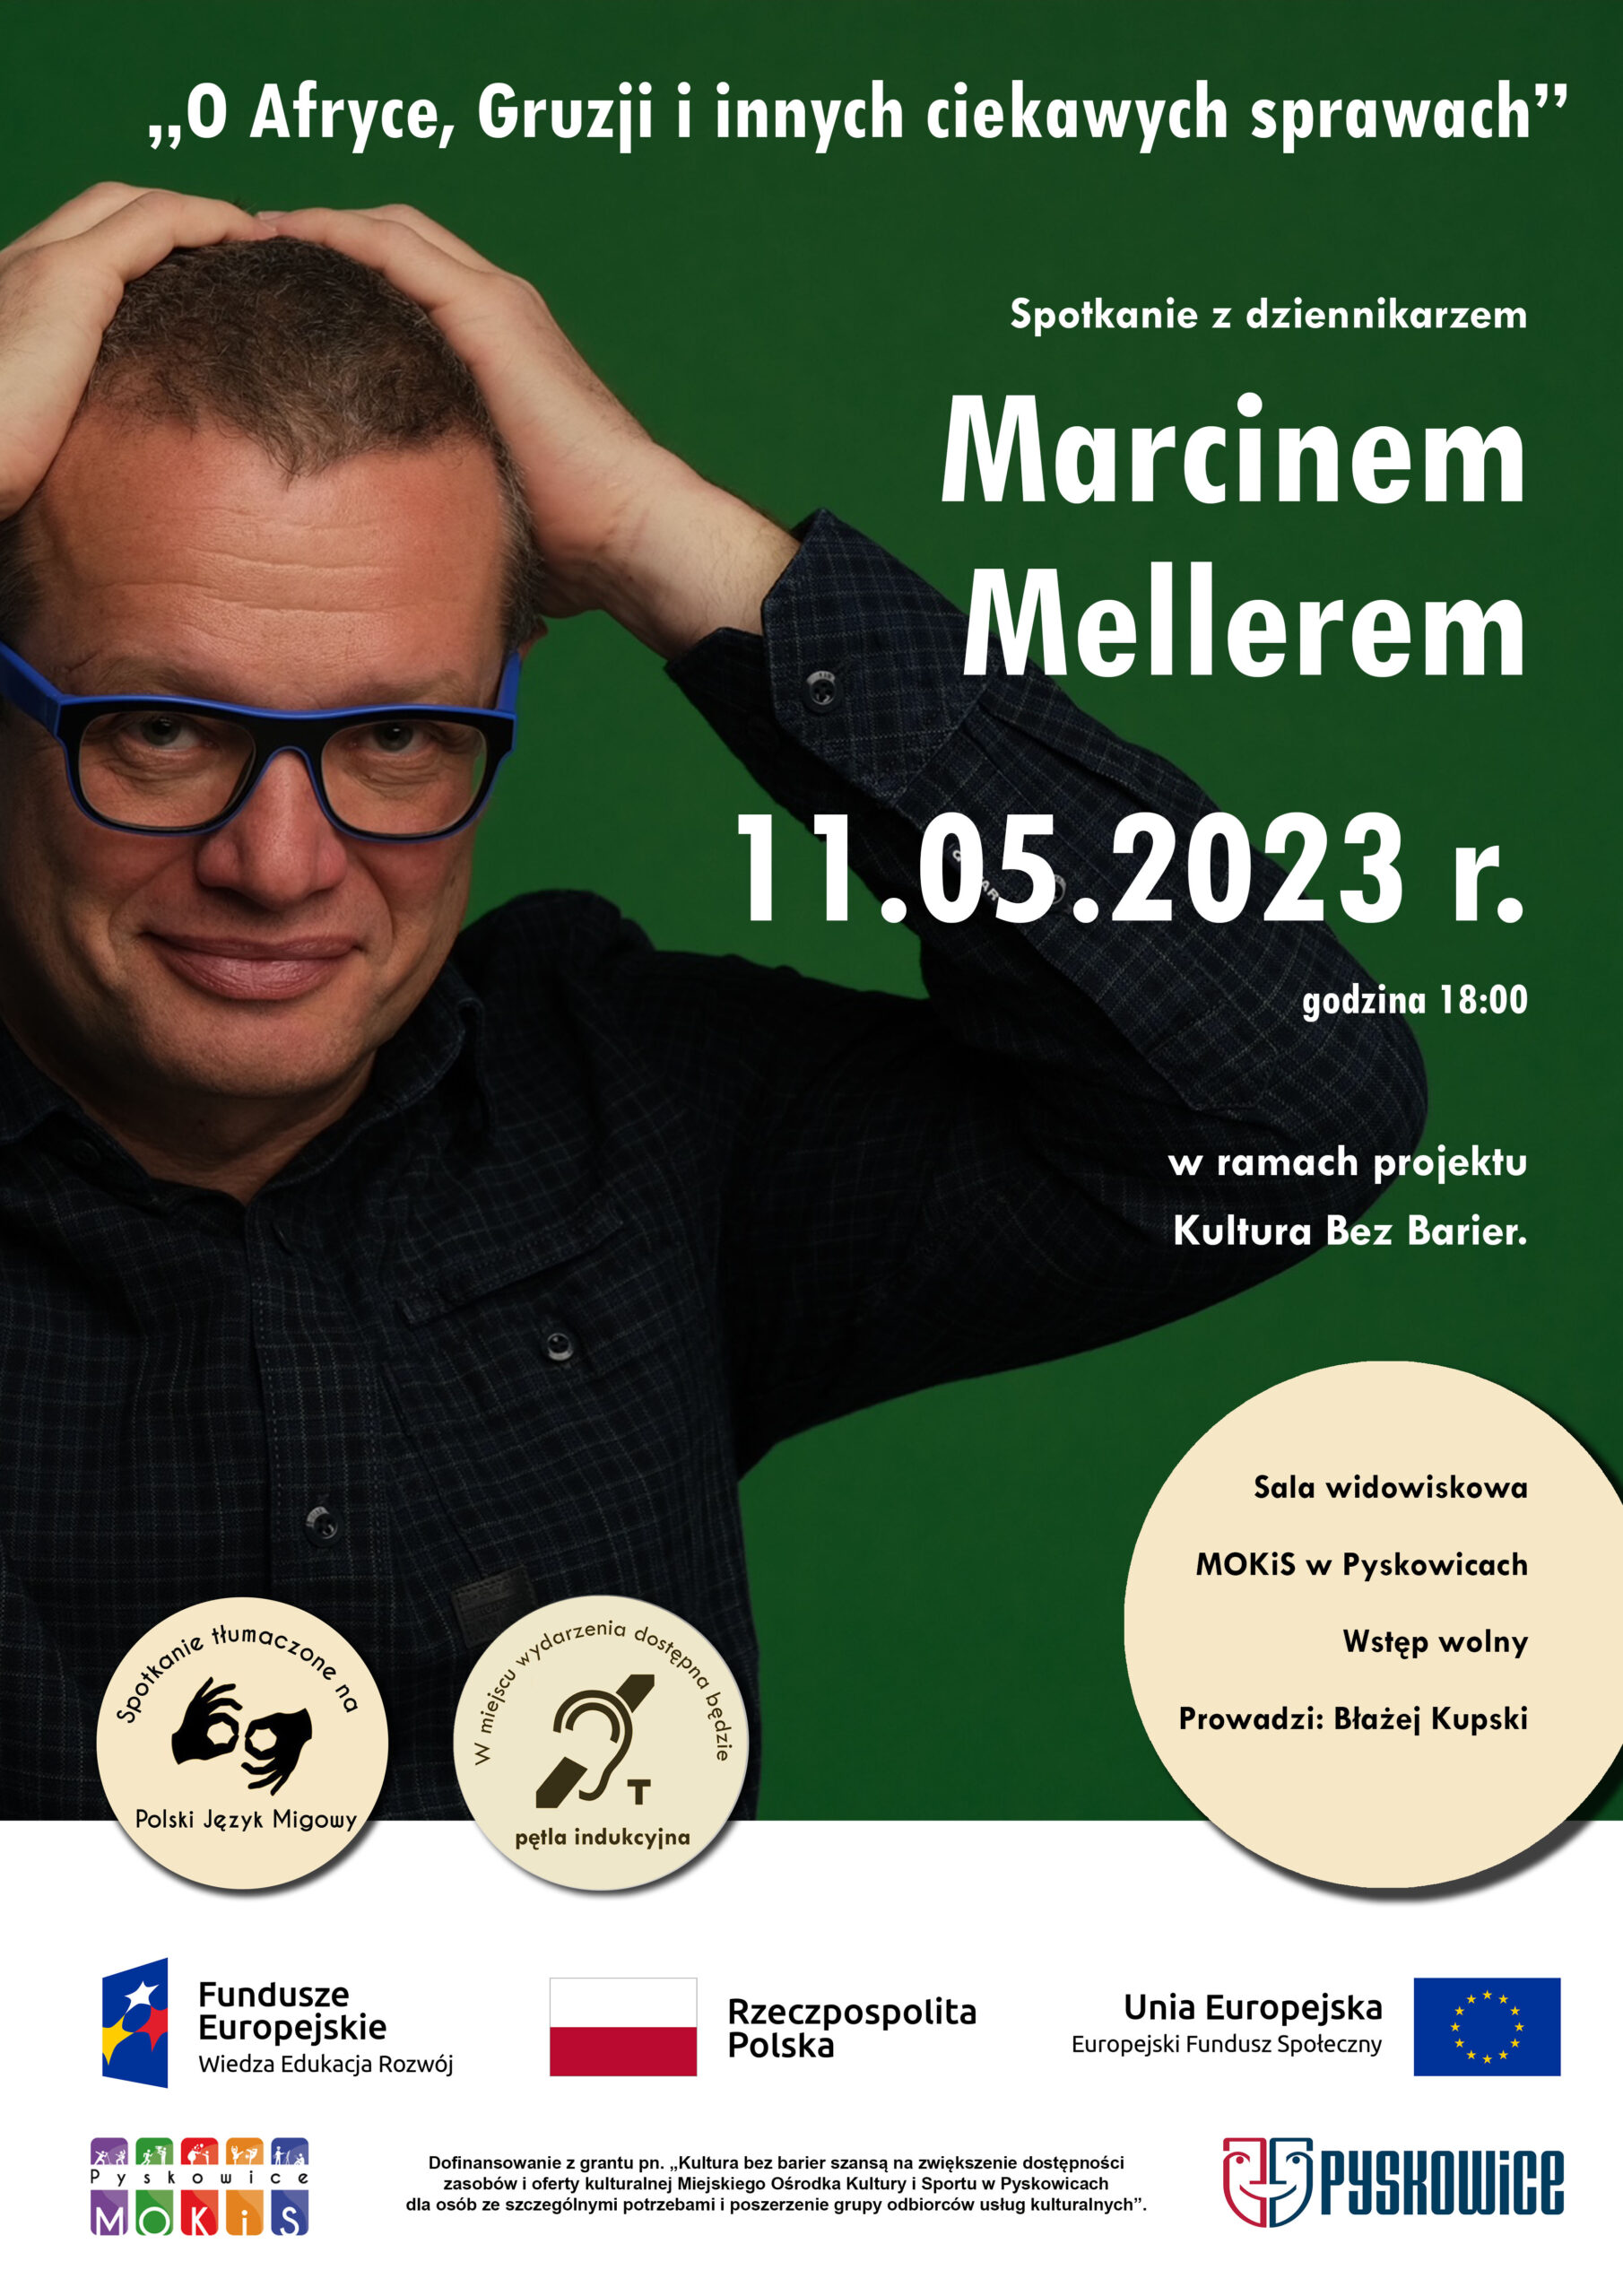 Plakat promujący spotkanie z dziennikarzem Marcinem Mellerem